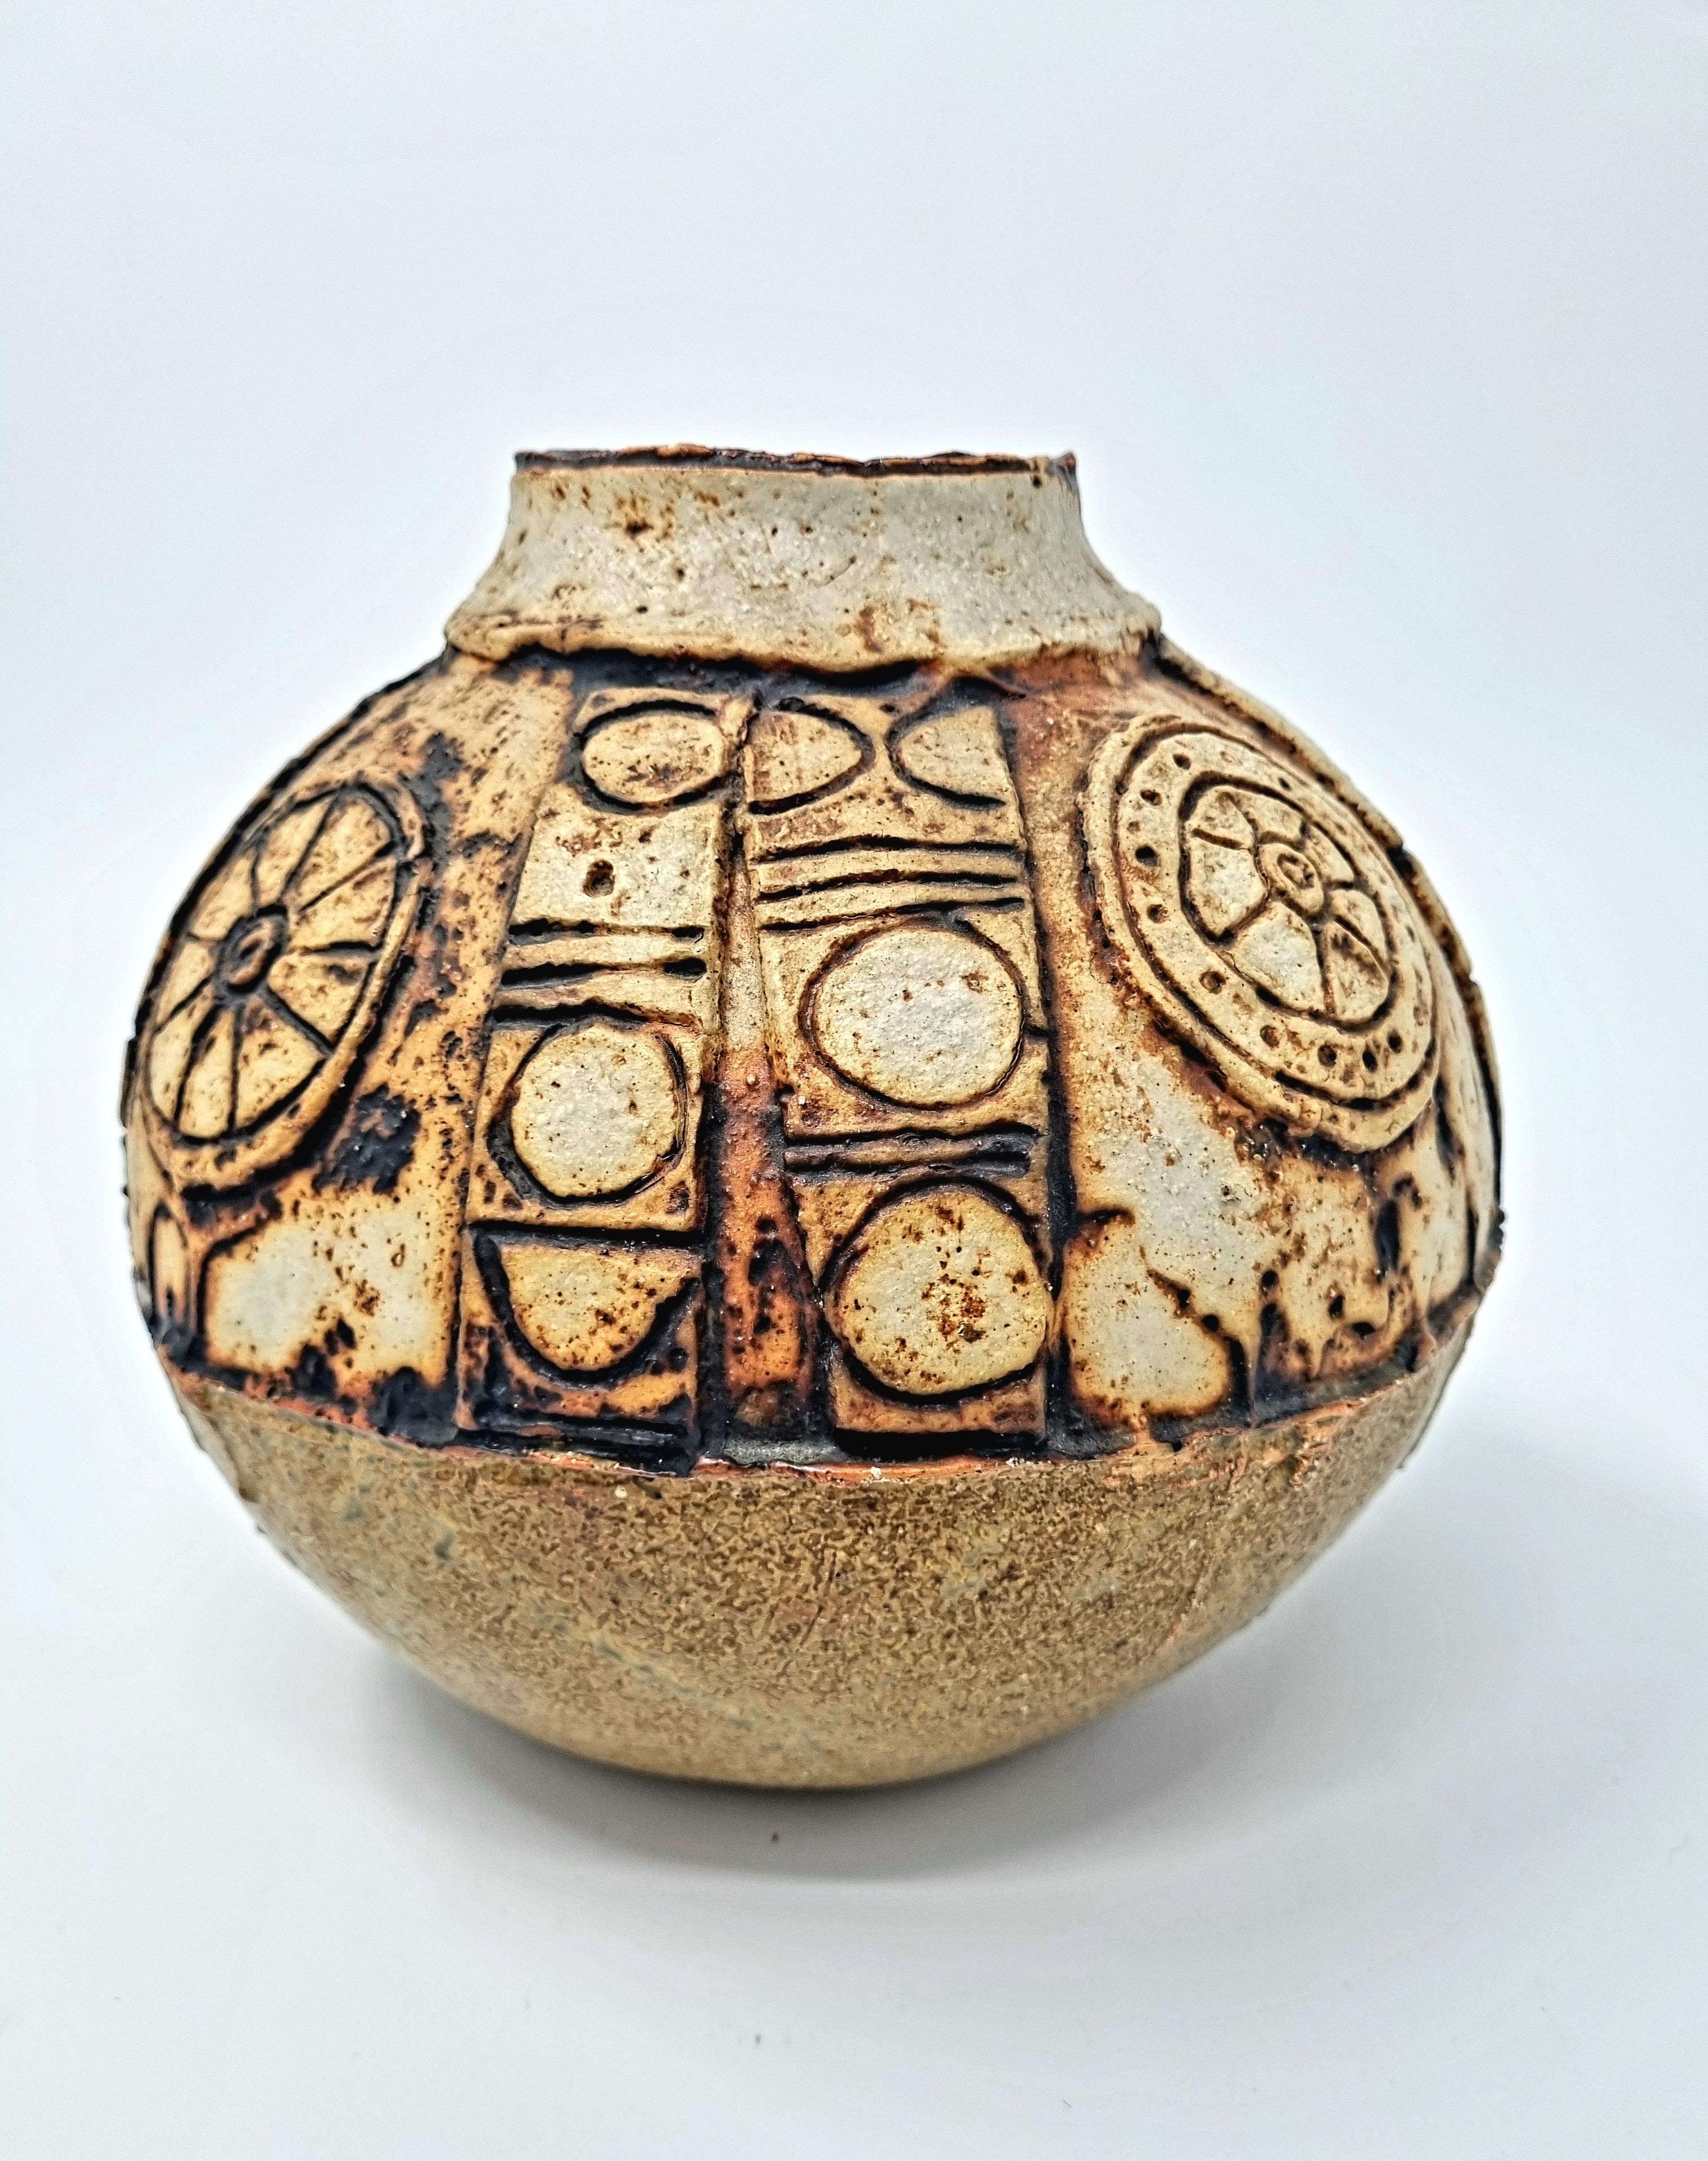 Vase de Bernard Rooke Studio Pottery . 

Un rare exemplaire des années 1960. 

Making Works par le célèbre artiste britannique Bernard Rooke, cette pièce est un merveilleux exemple de son travail. 

Le parcours de Bernard Rooke en tant qu'artiste a